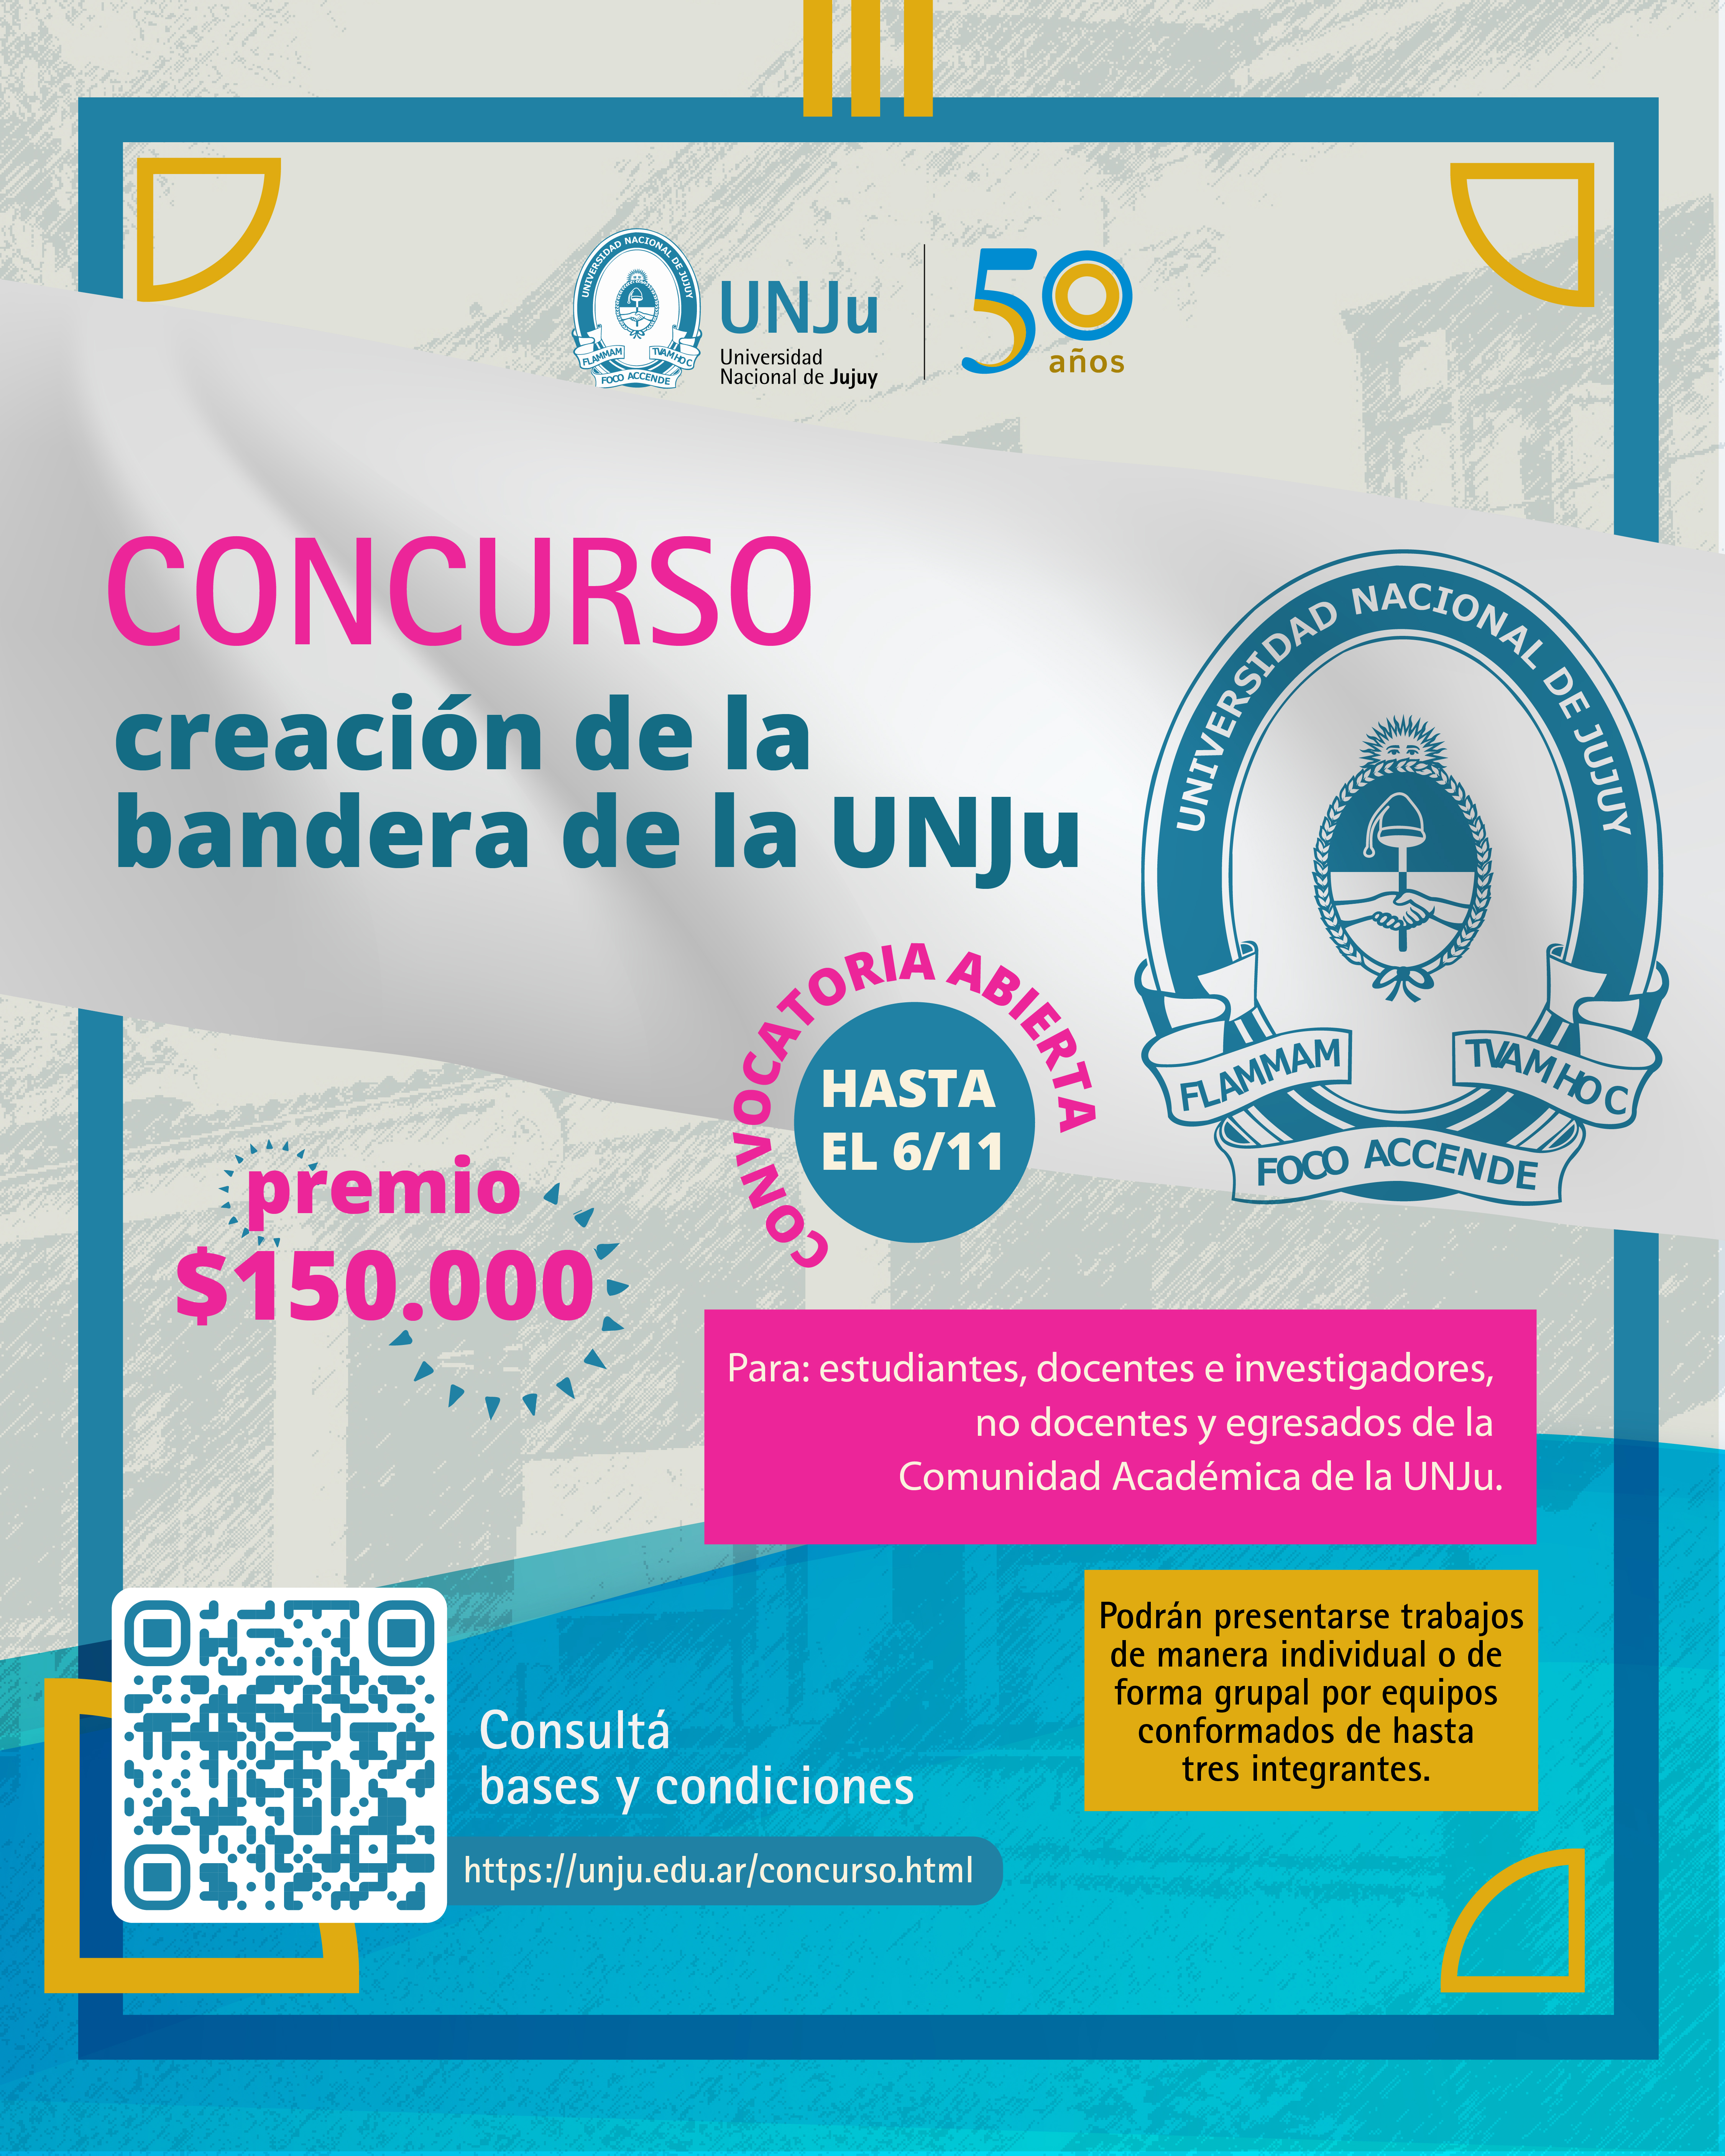 La UNJu lanzó el concurso para la creación de la bandera institucional